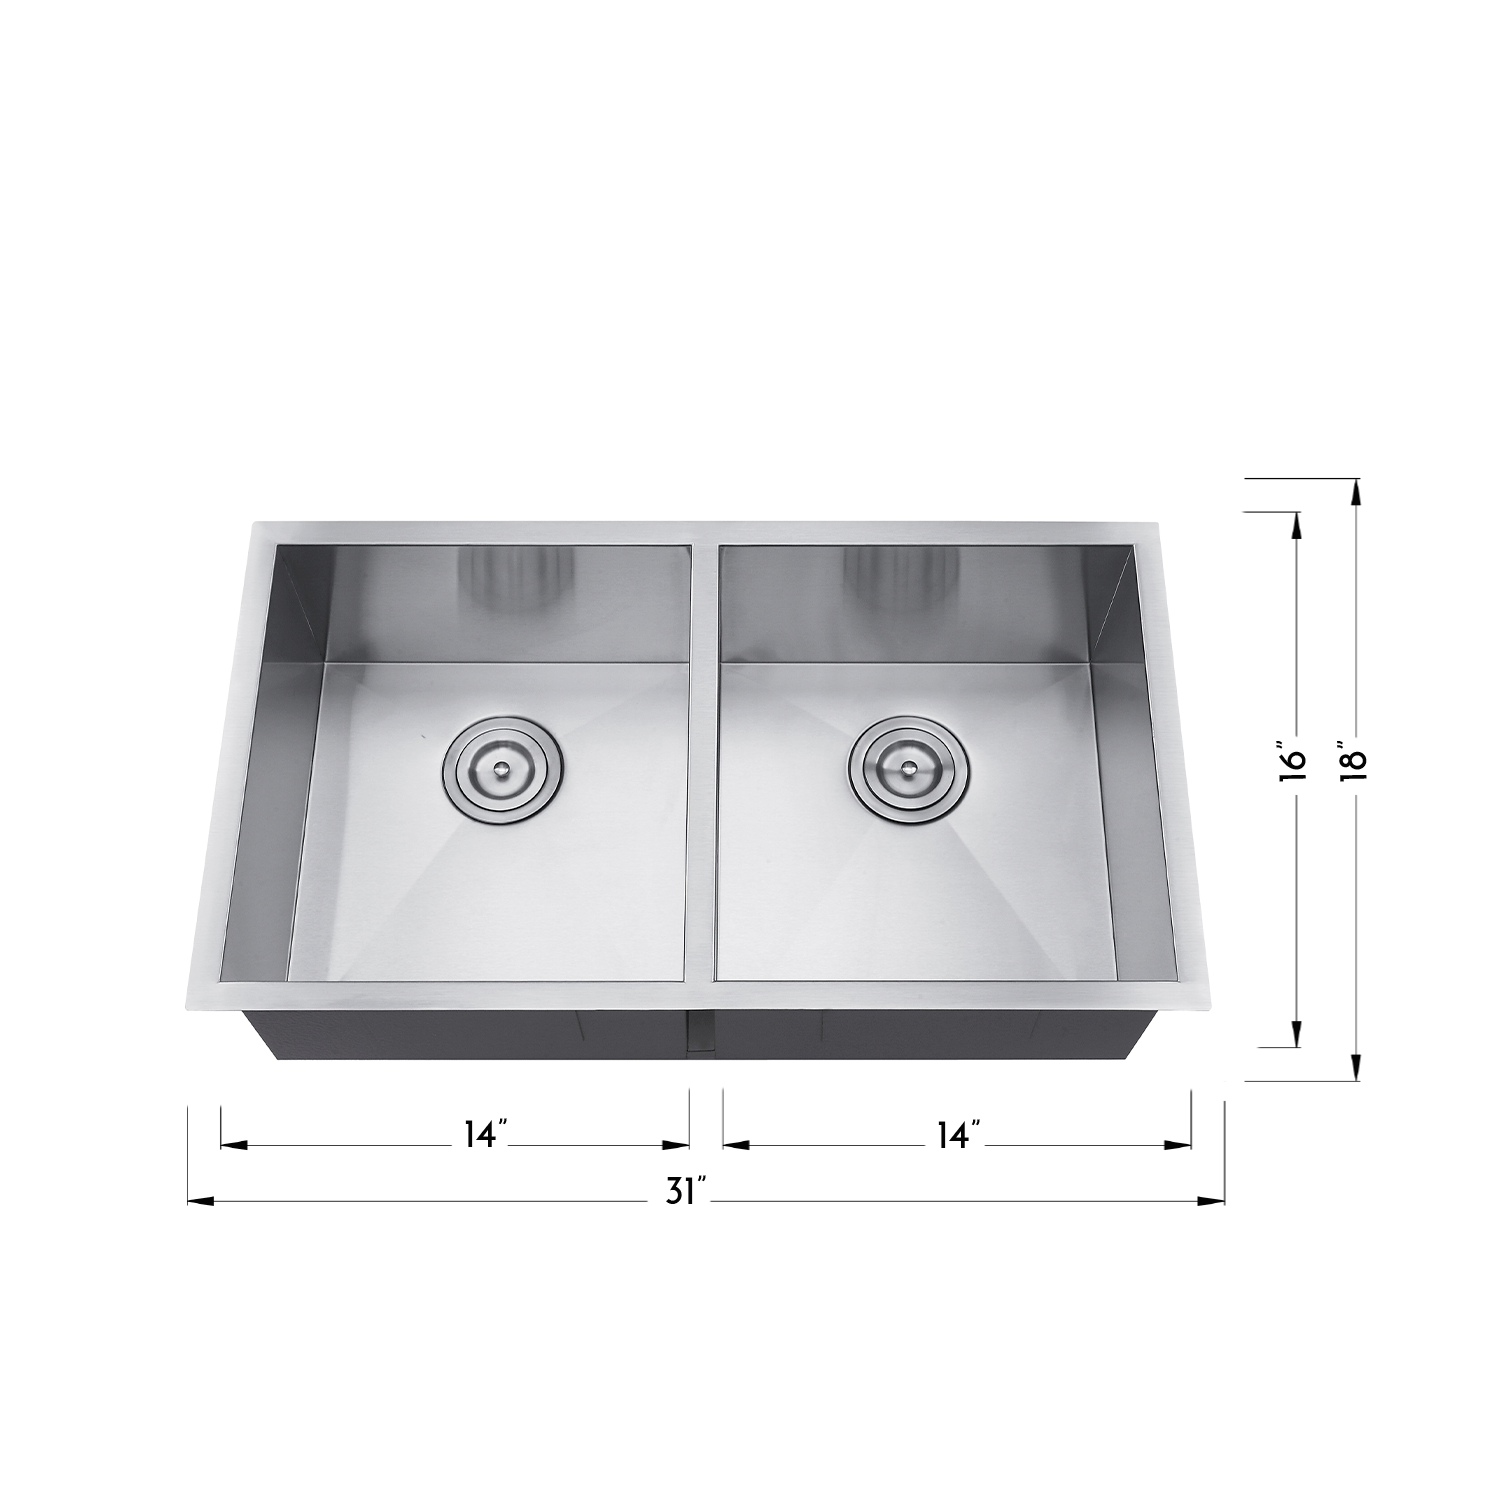 DAX Handmade 50/50 Double Bowl Undermount Kitchen Sink. 18 gauge. 31" x 18" (DAX-SQ-3118A-X)